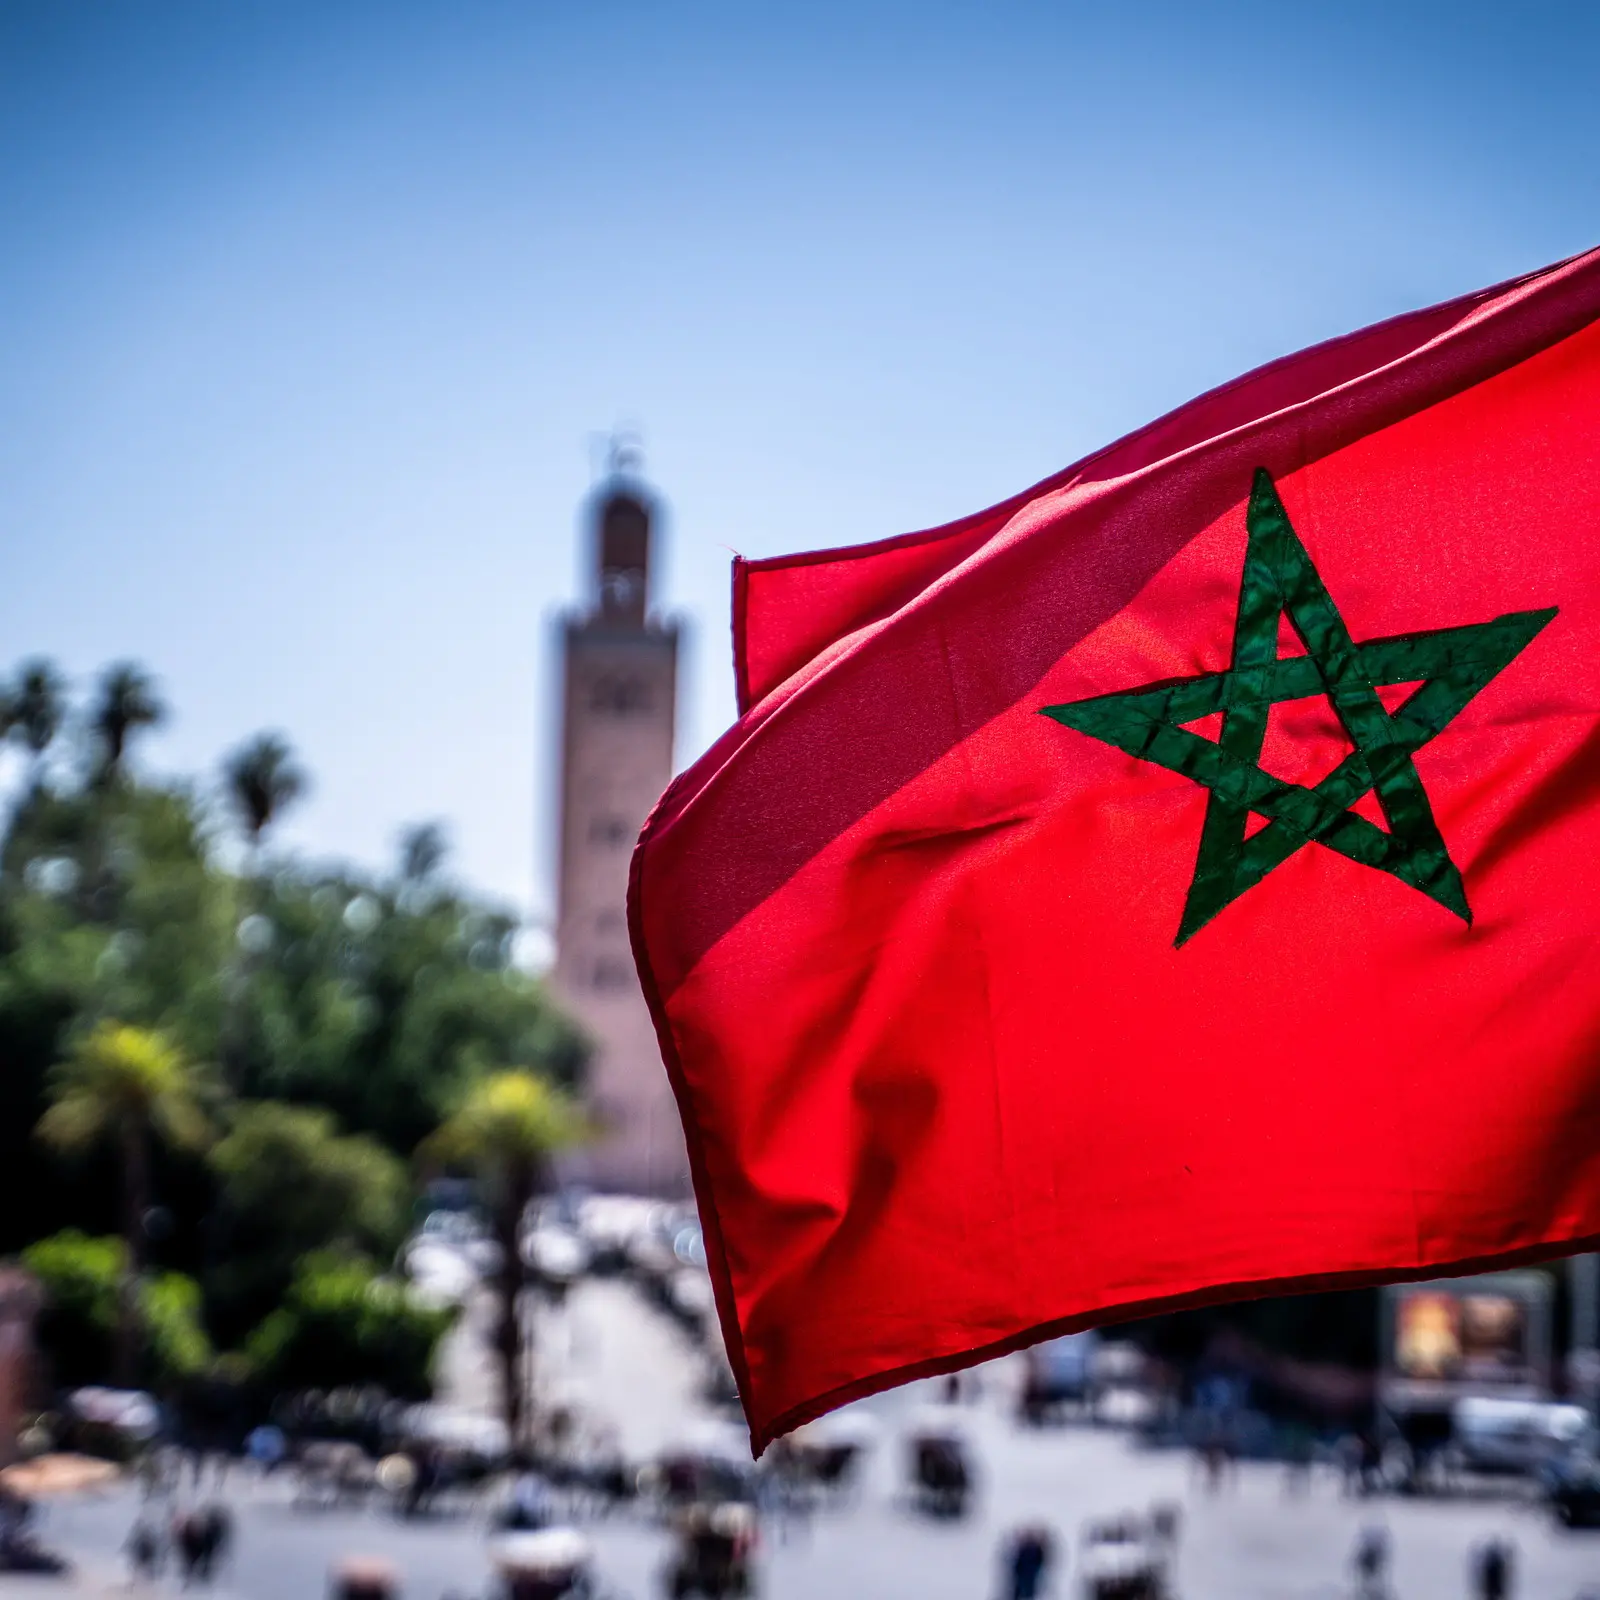 Marocco, una tragedia senza precedenti